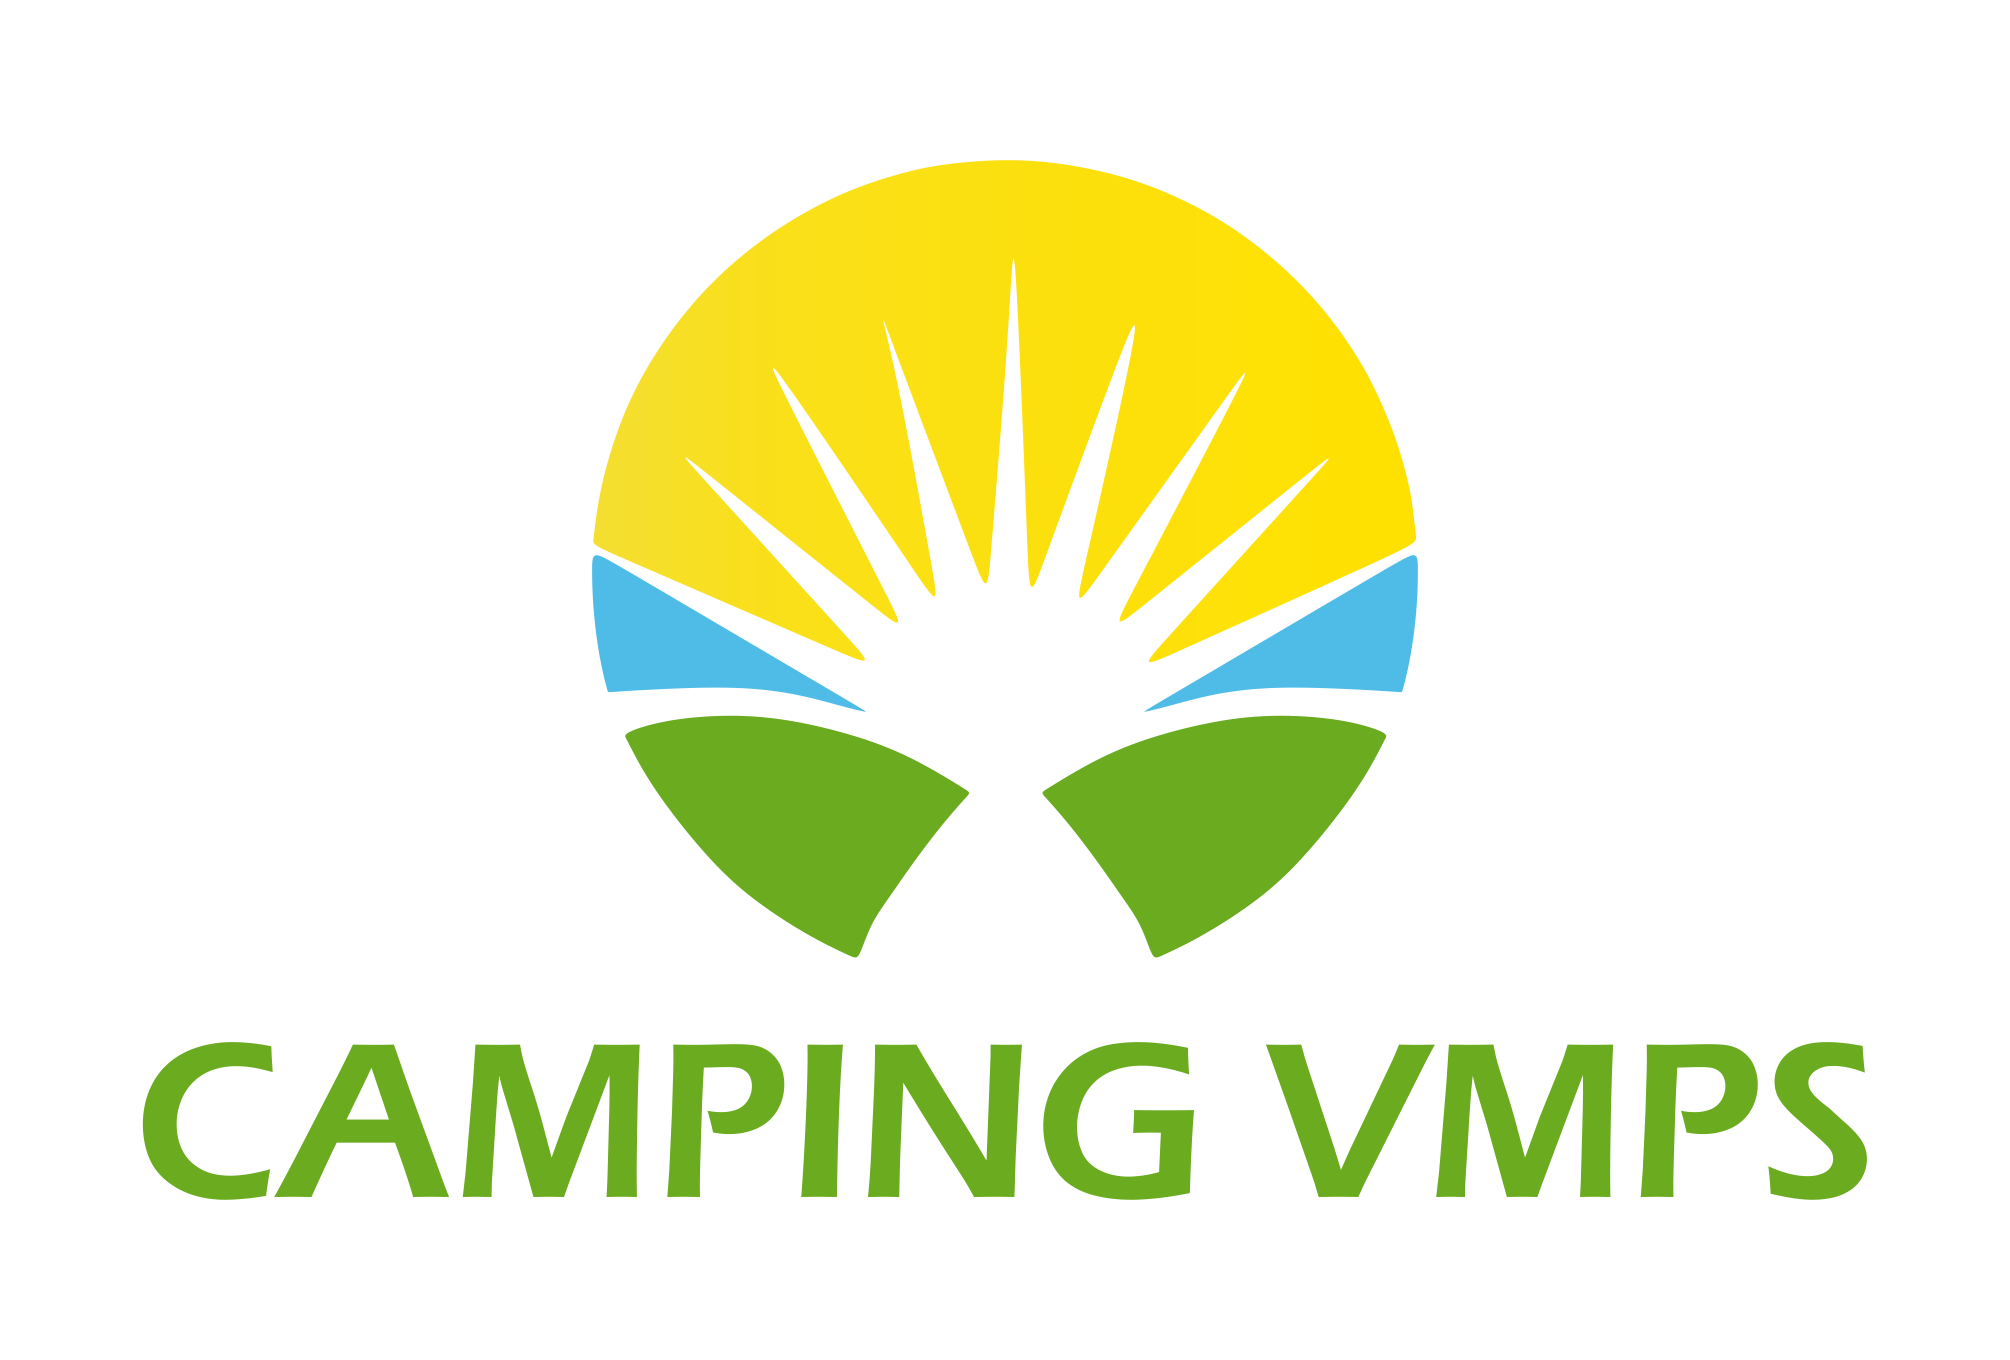 Camping VMPS